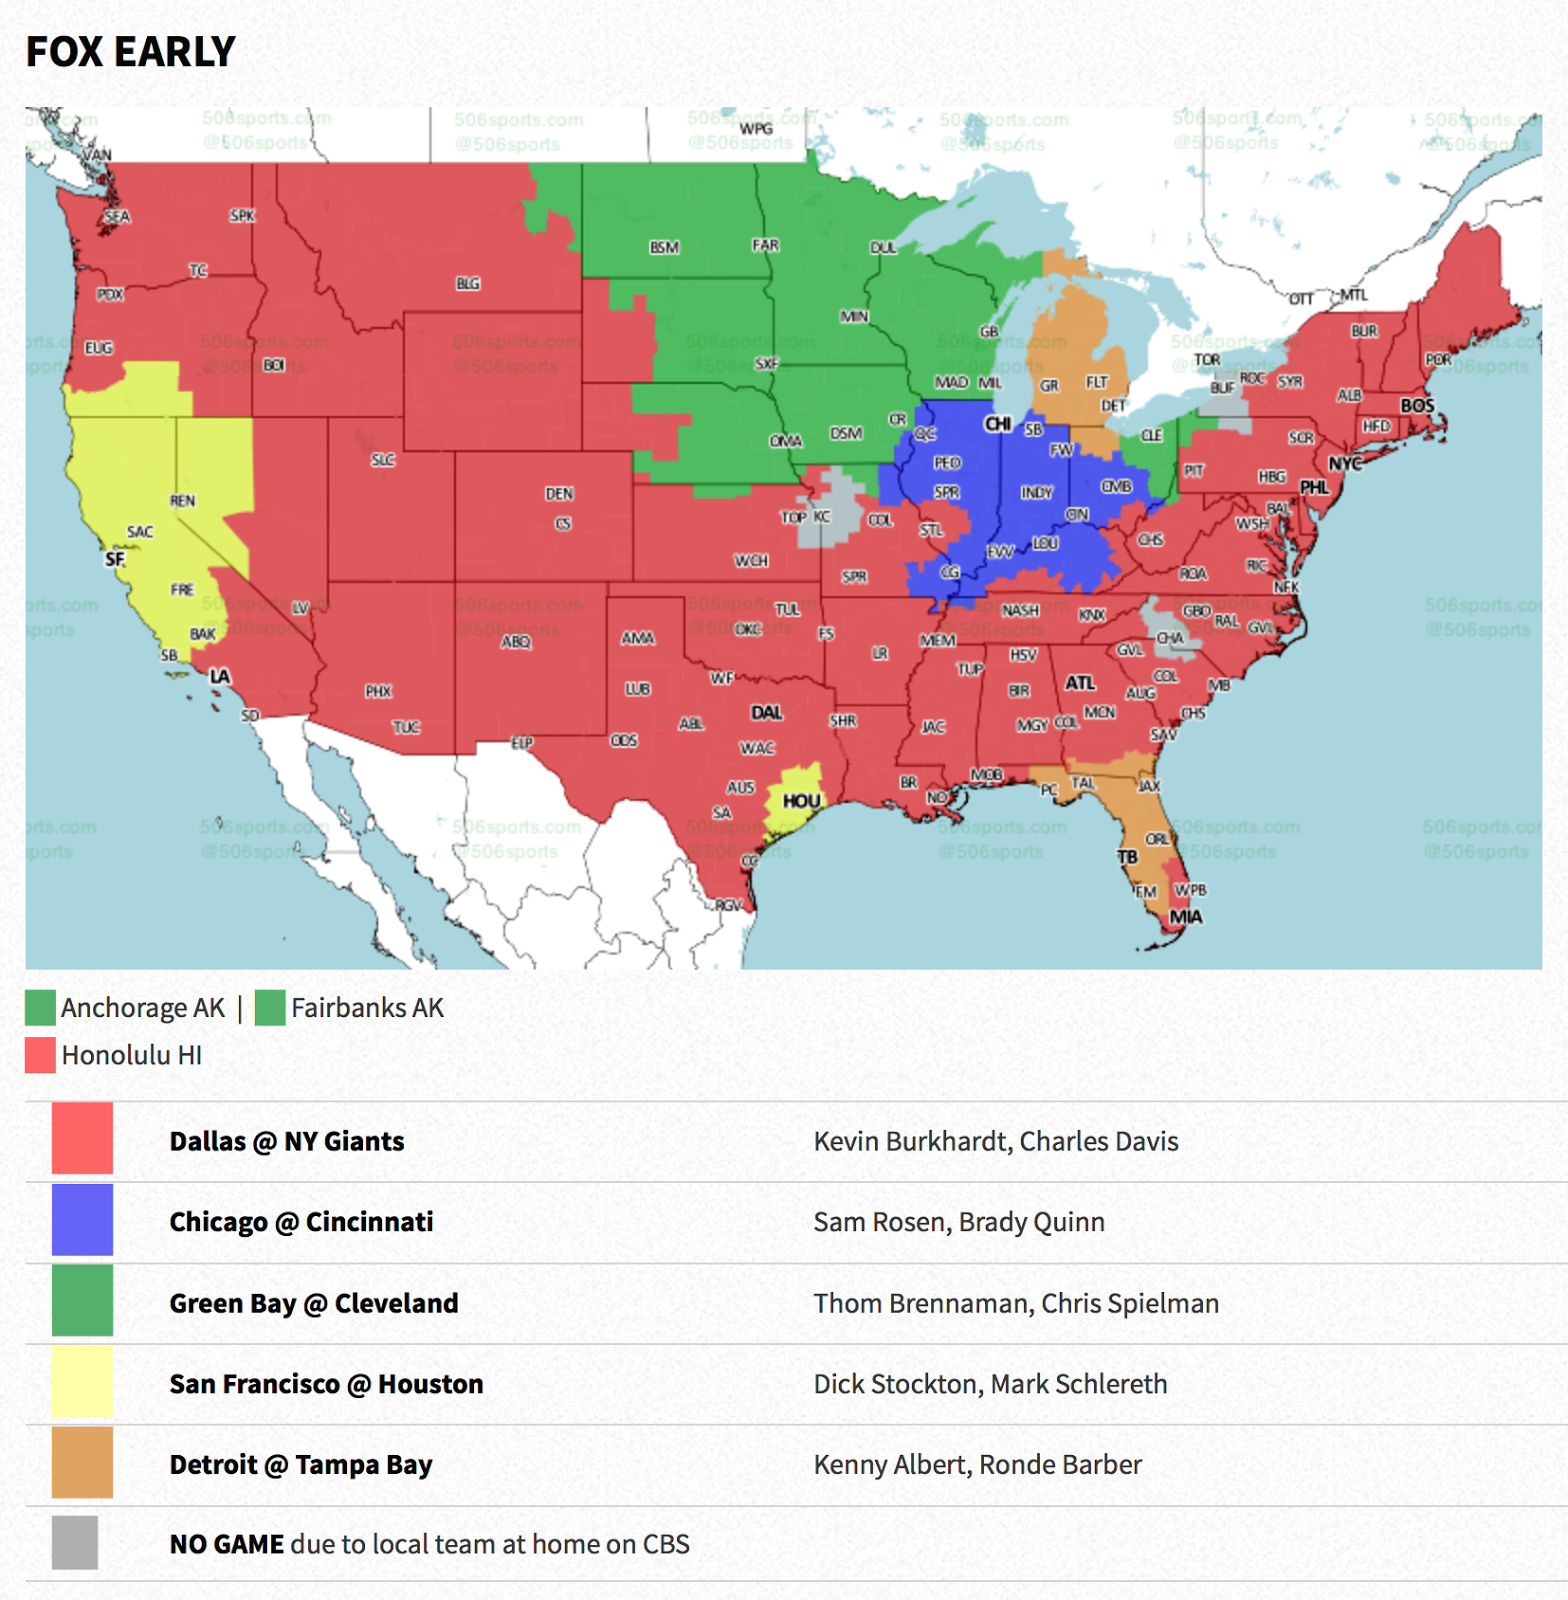 PACKERVILLE, U.S.A. Week 14 NFL TV Maps